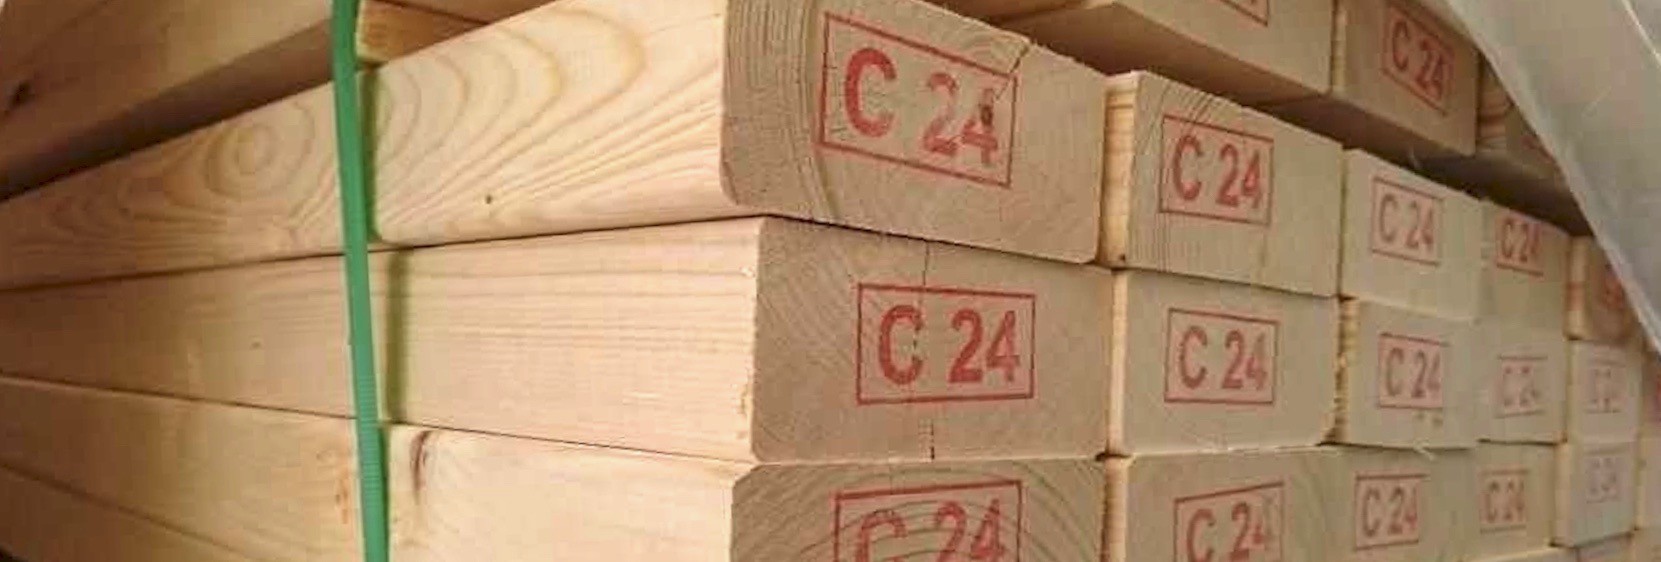 Drewno klasy C24